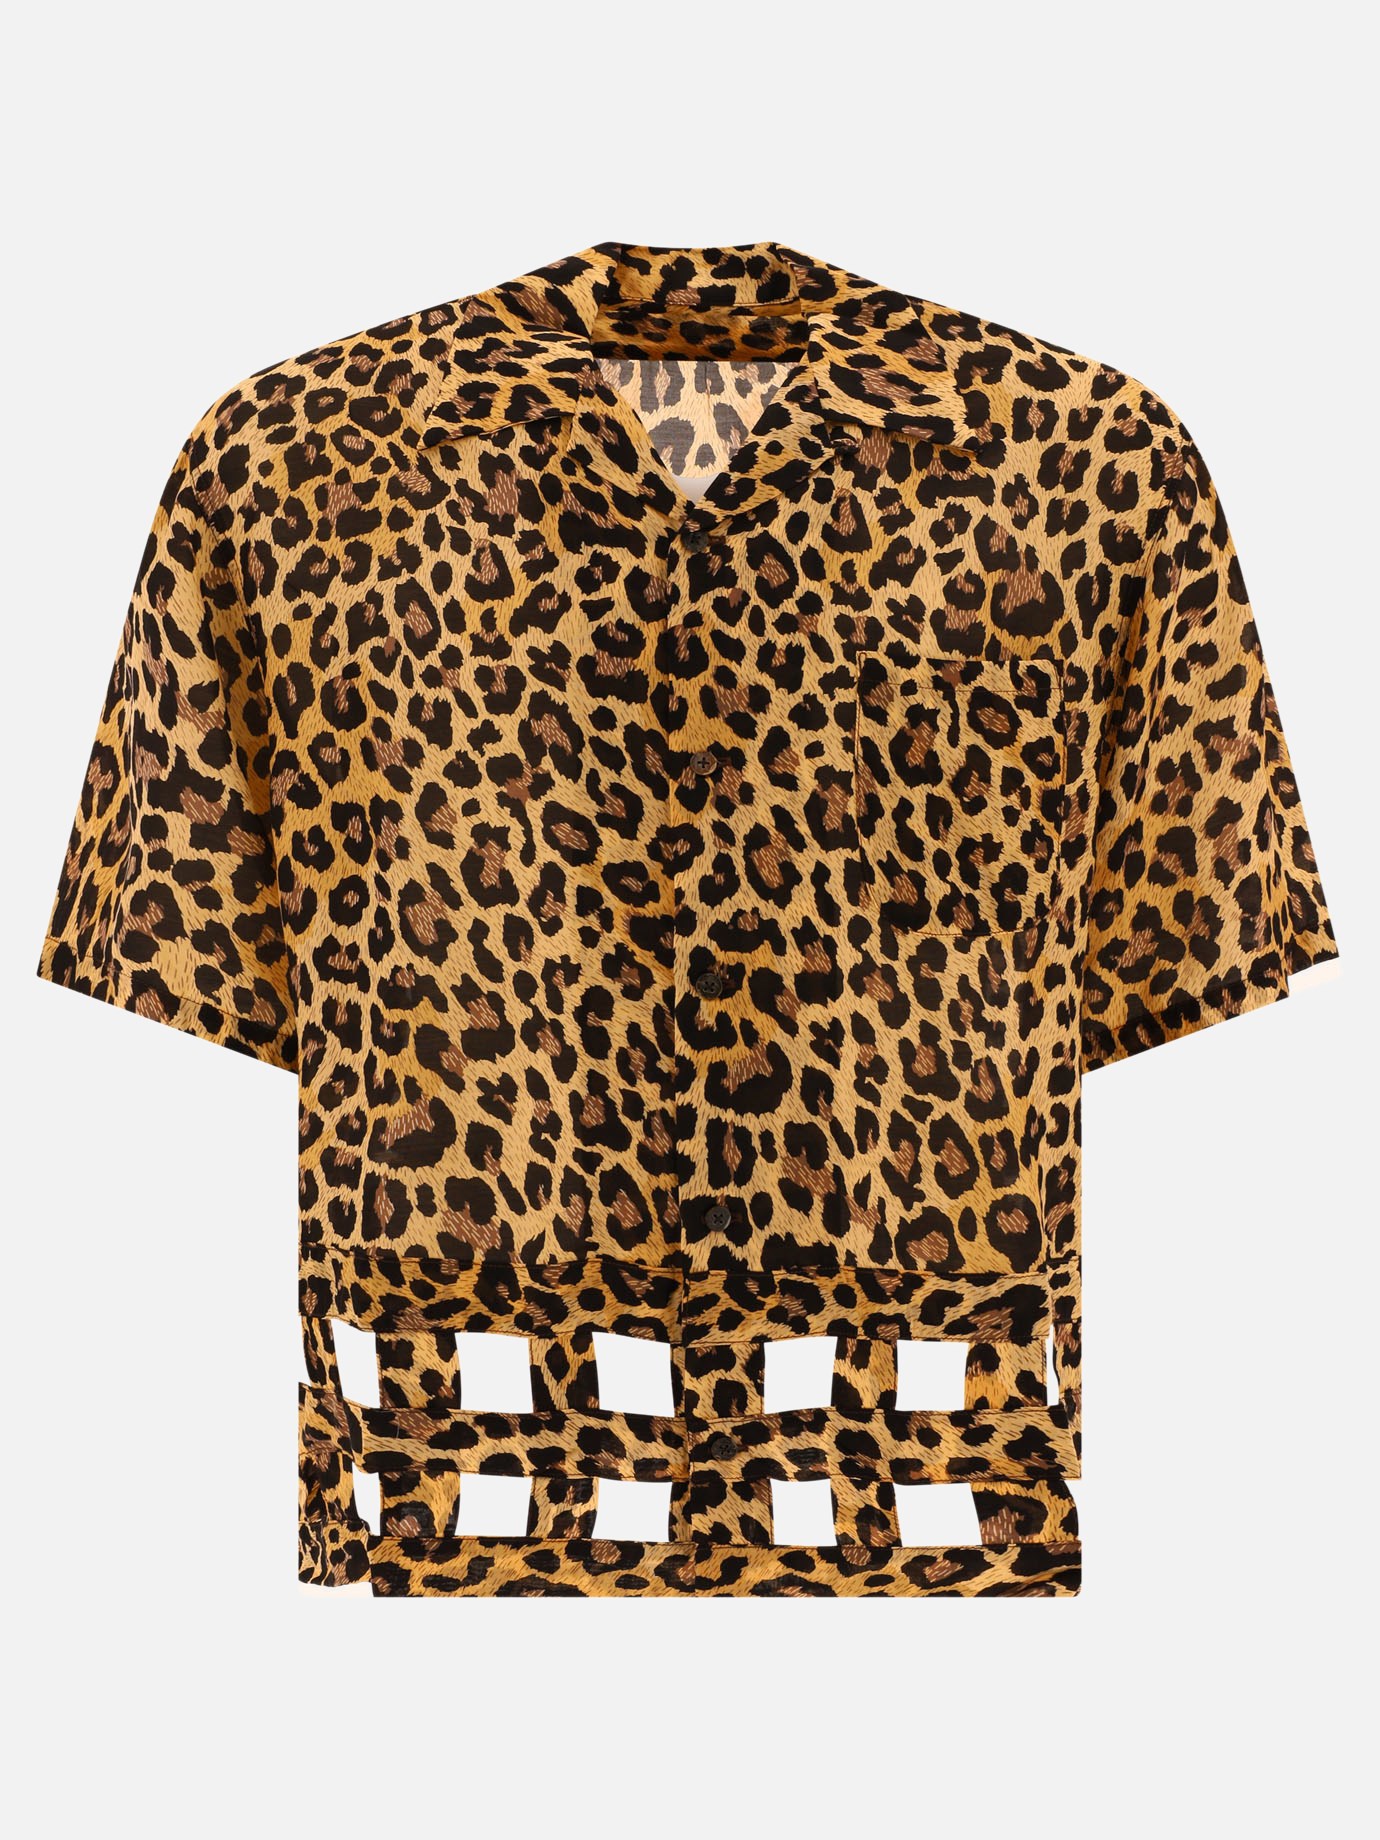  Leopard Aloha  shirtby Kapital - 5